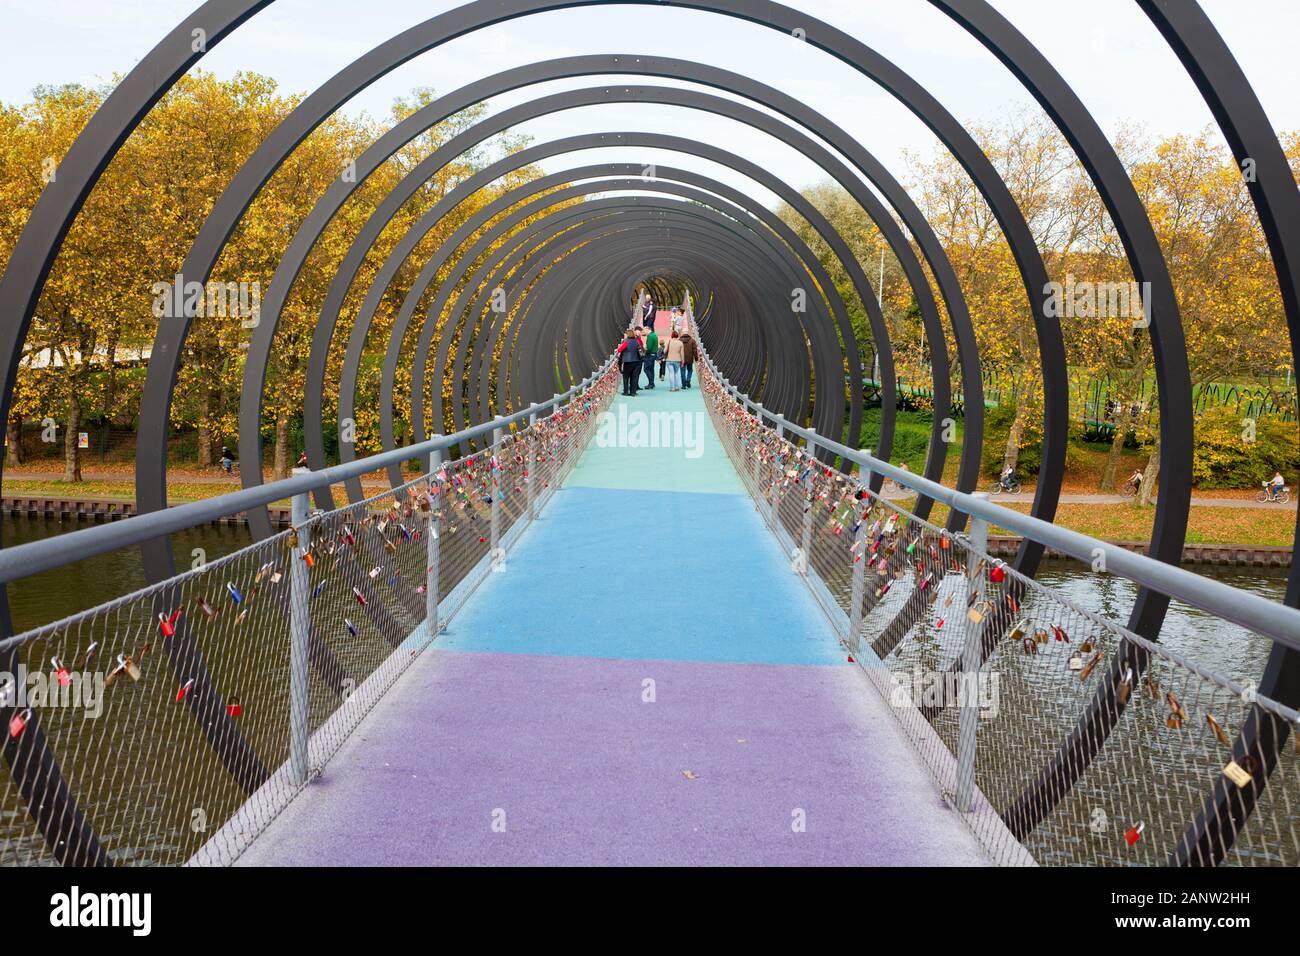 Slinky Ressorts pour la gloire, la passerelle pour piétons par Tobias Rehberger, Rhine-Herne Canal, Oberhausen, Allemagne Banque D'Images